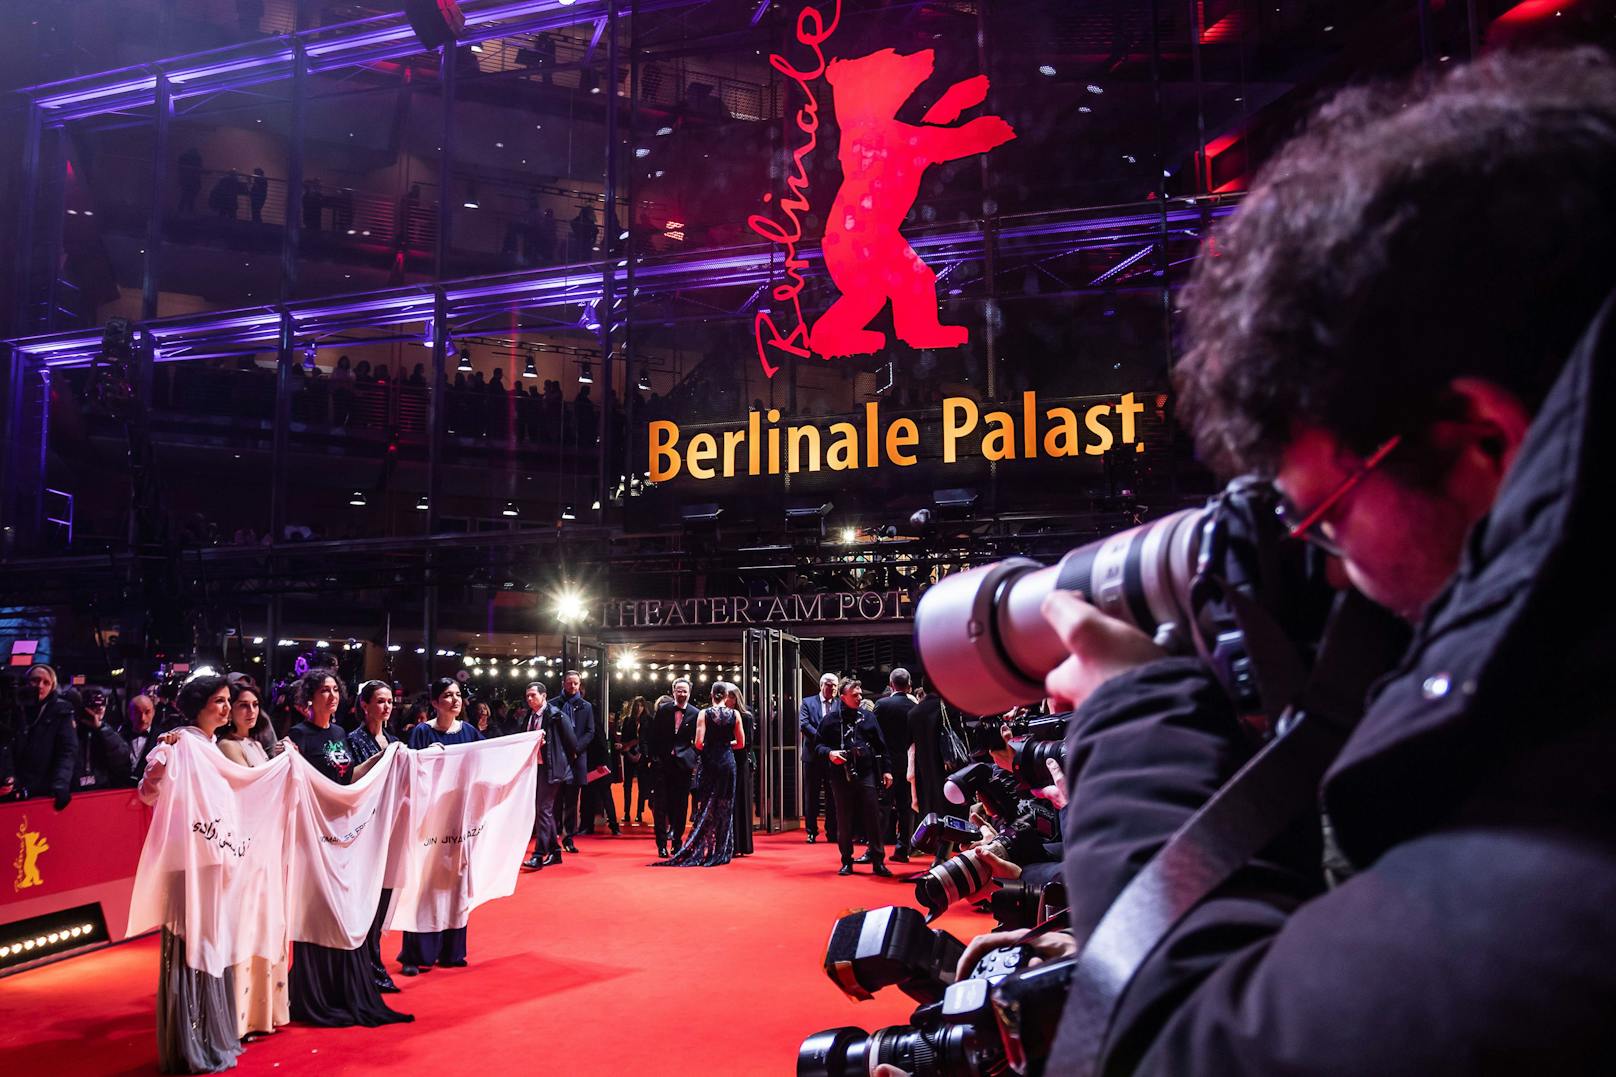 Zum 73. Mal wurde die Berlinale am Potsdamer Platz Eröffnet.